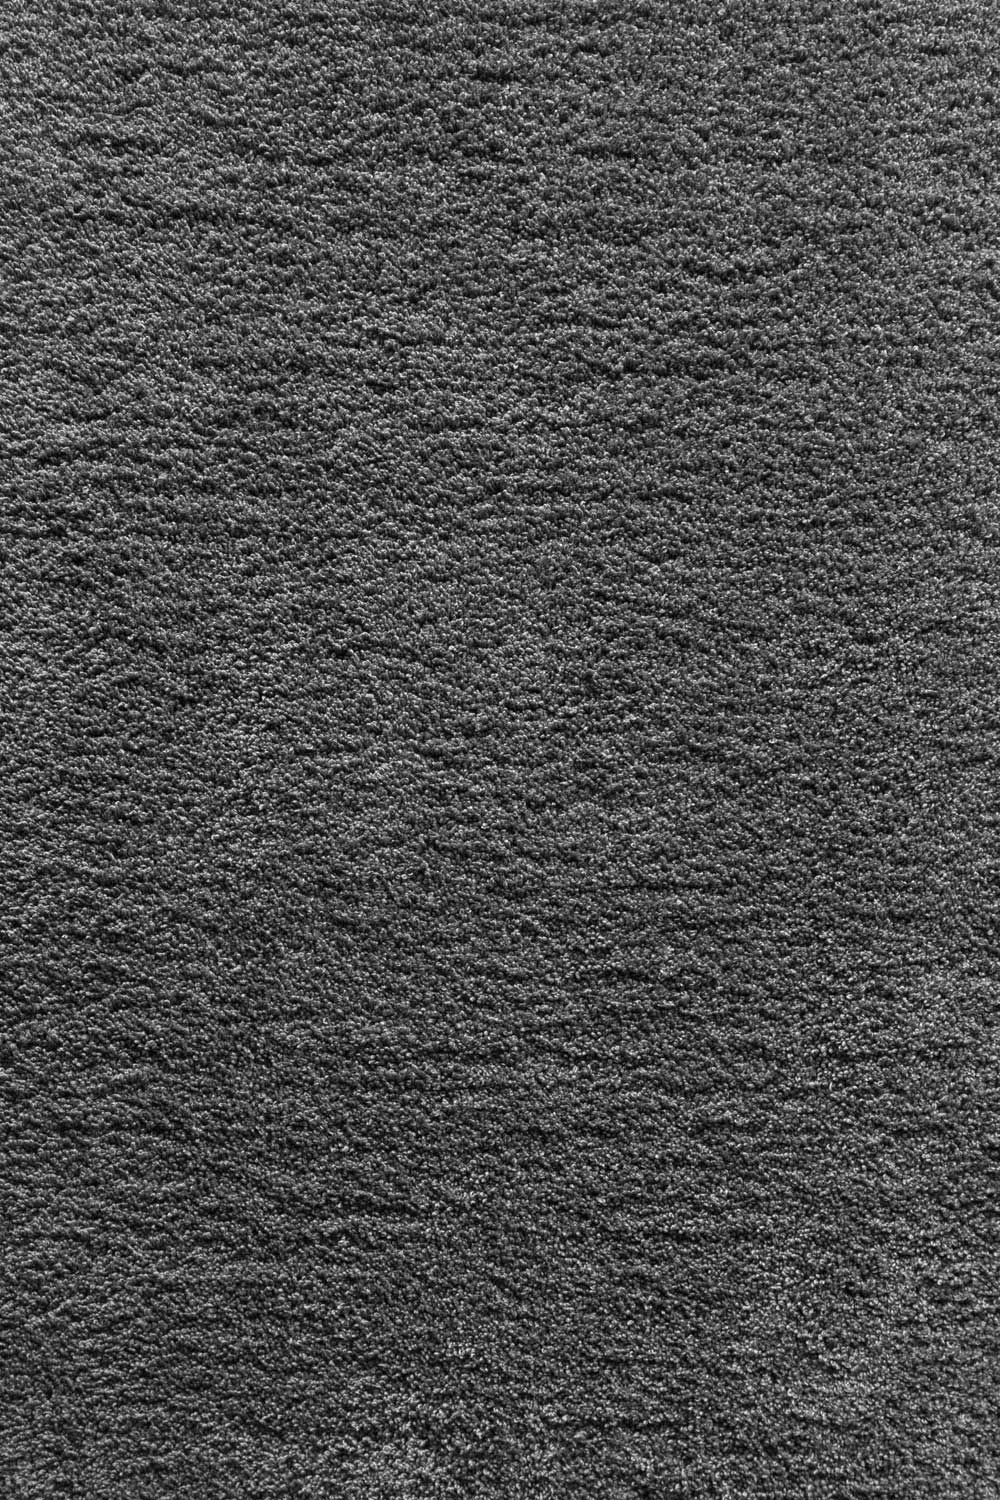 Metrážny koberec Sofia 96 400 cm